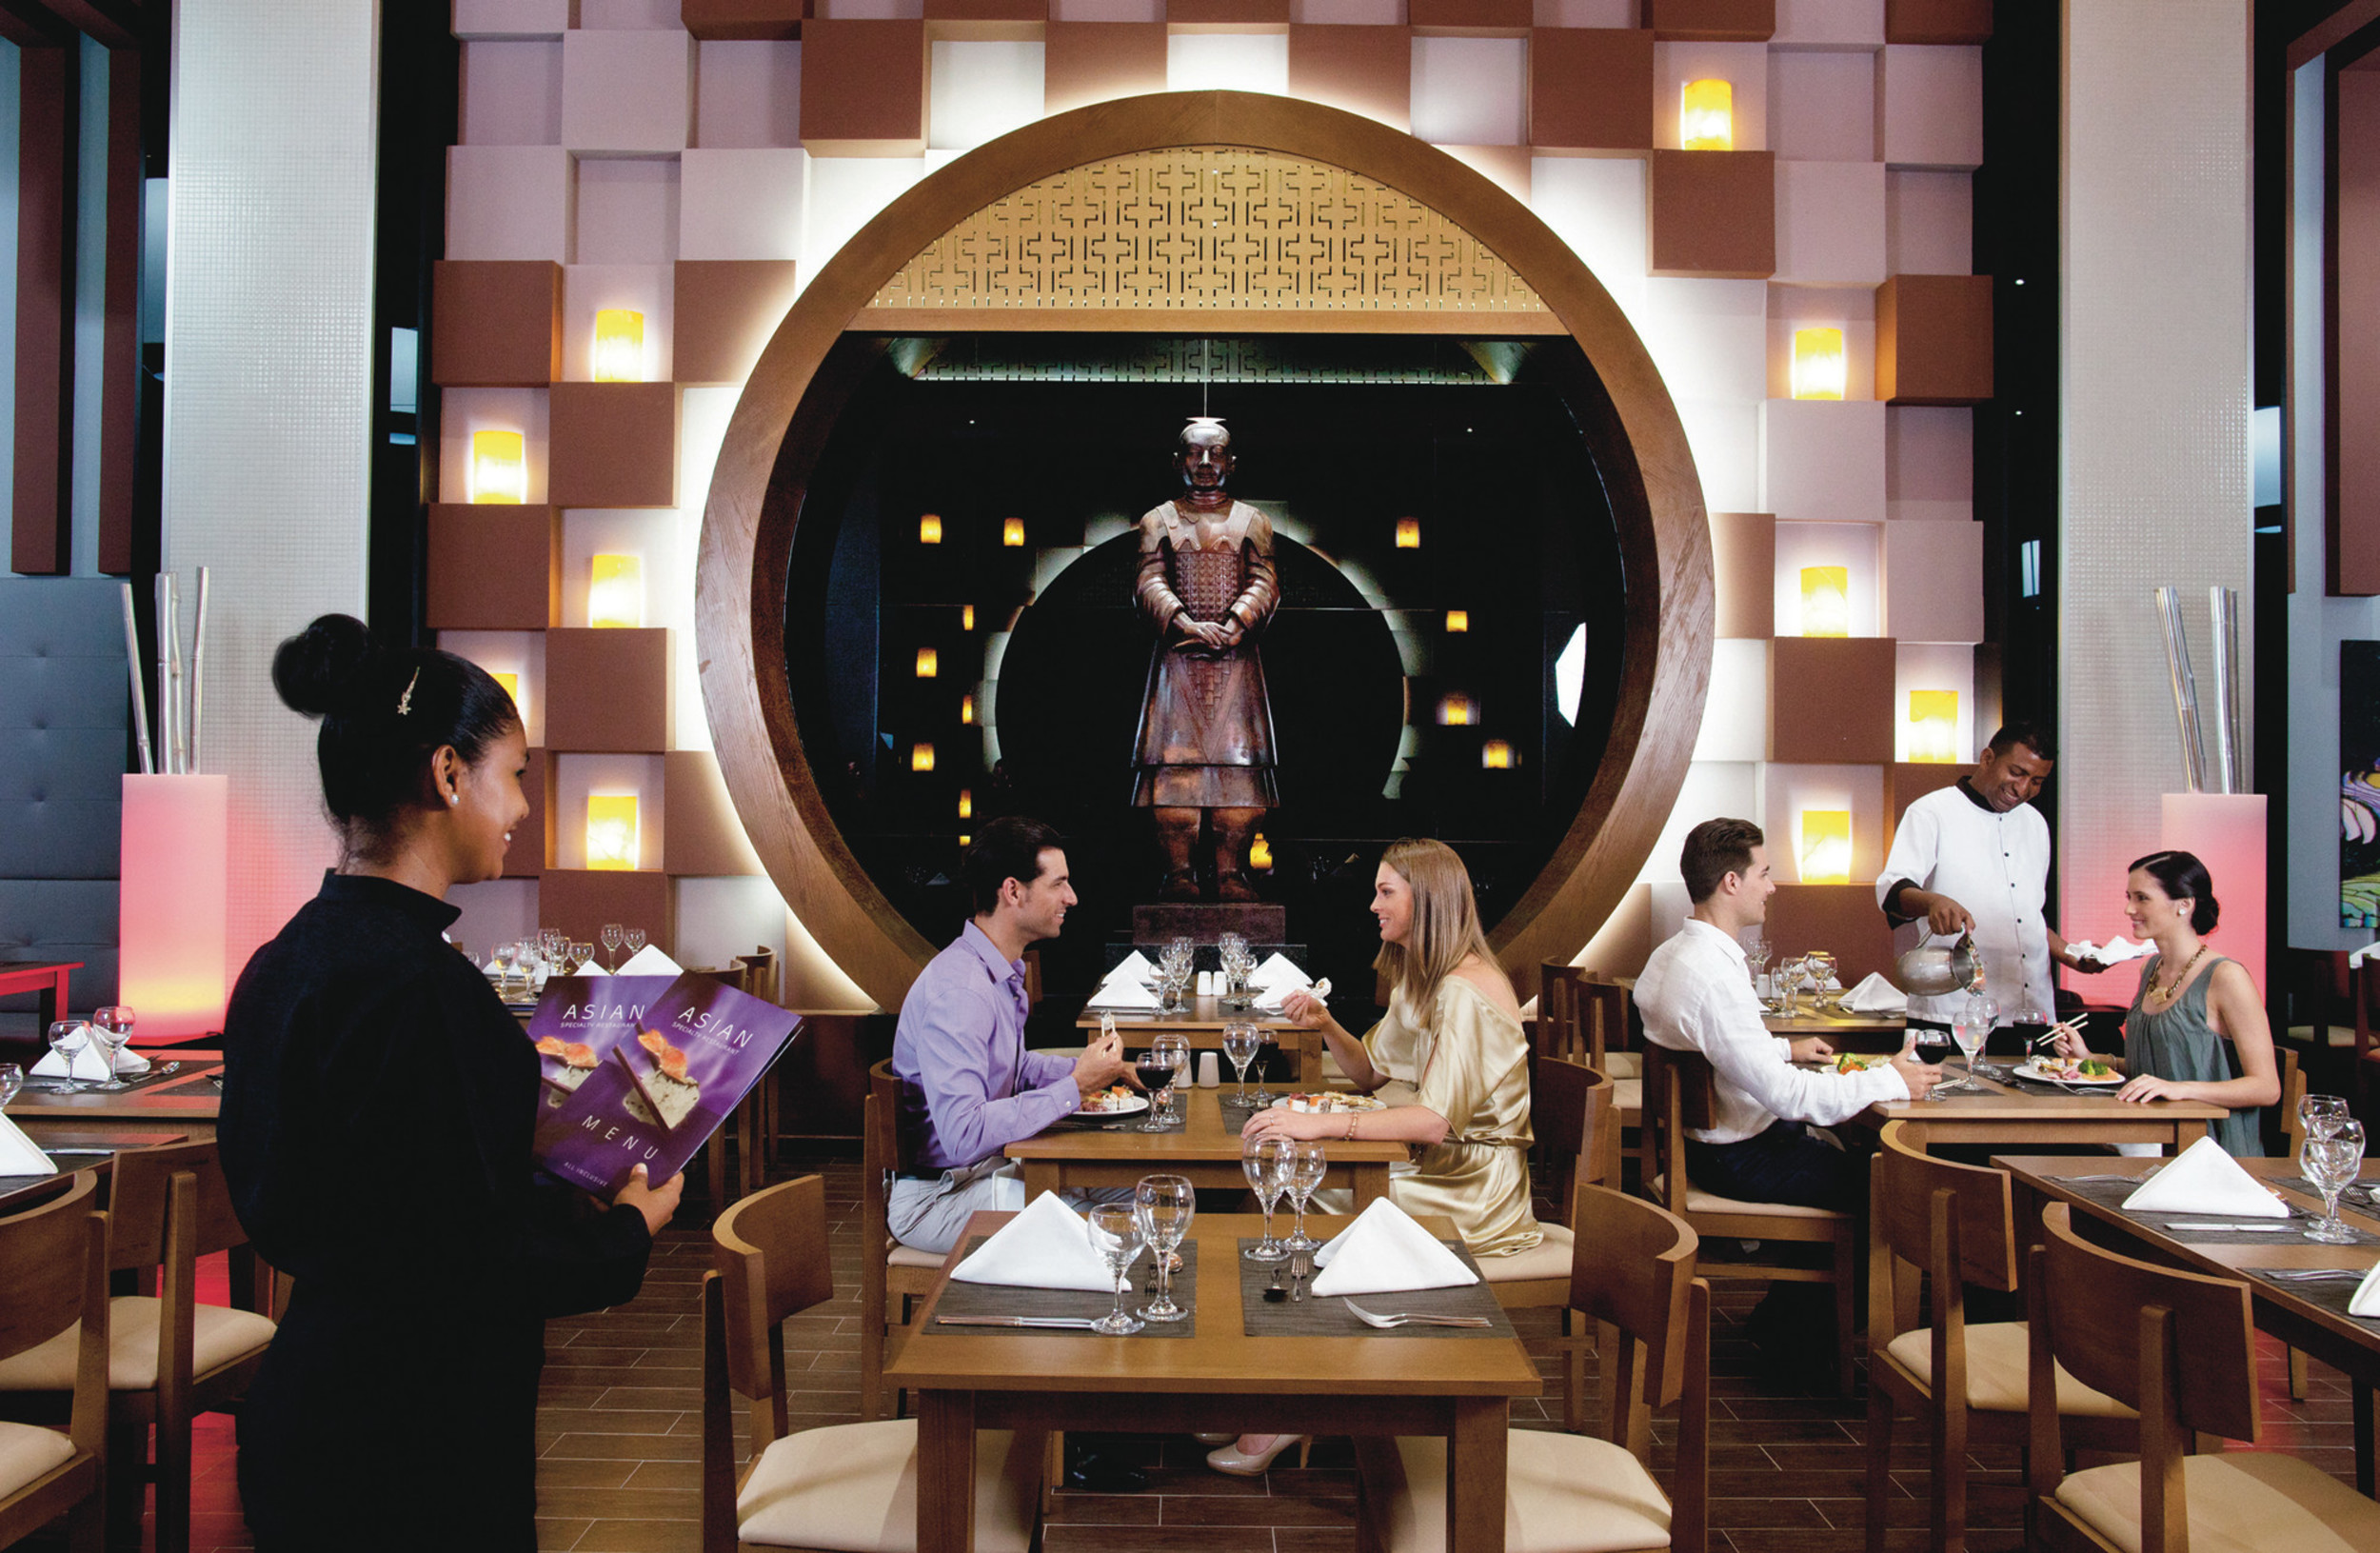 https://bubo.sk/uploads/galleries/21389/pbl_14_049---asian-restaurant.jpg